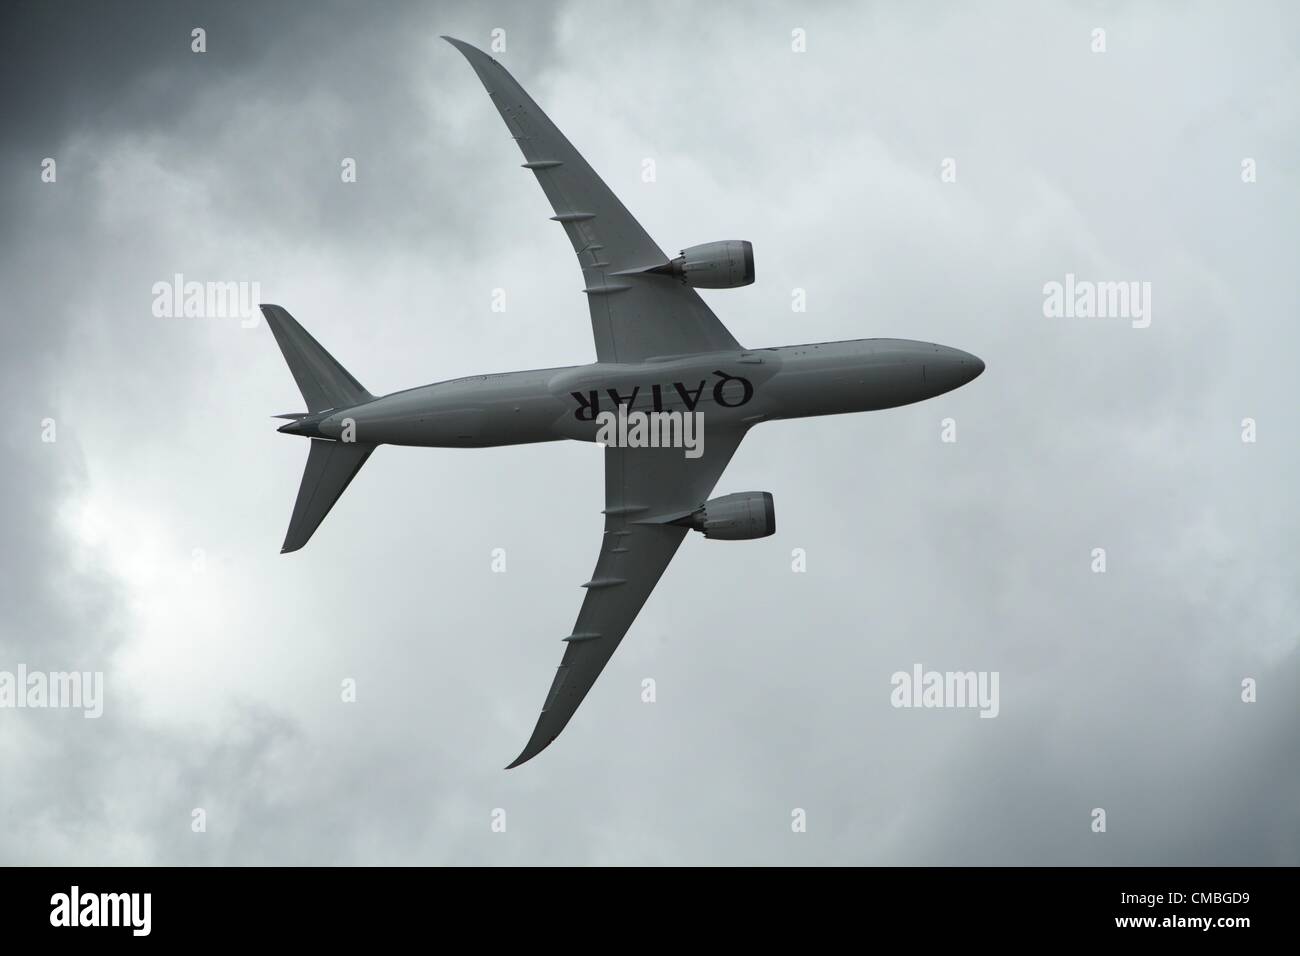 11 June 2012. Farnborough International airshow.  Pictured - Qatar Airways Boeing 787 Dreamliner Stock Photo